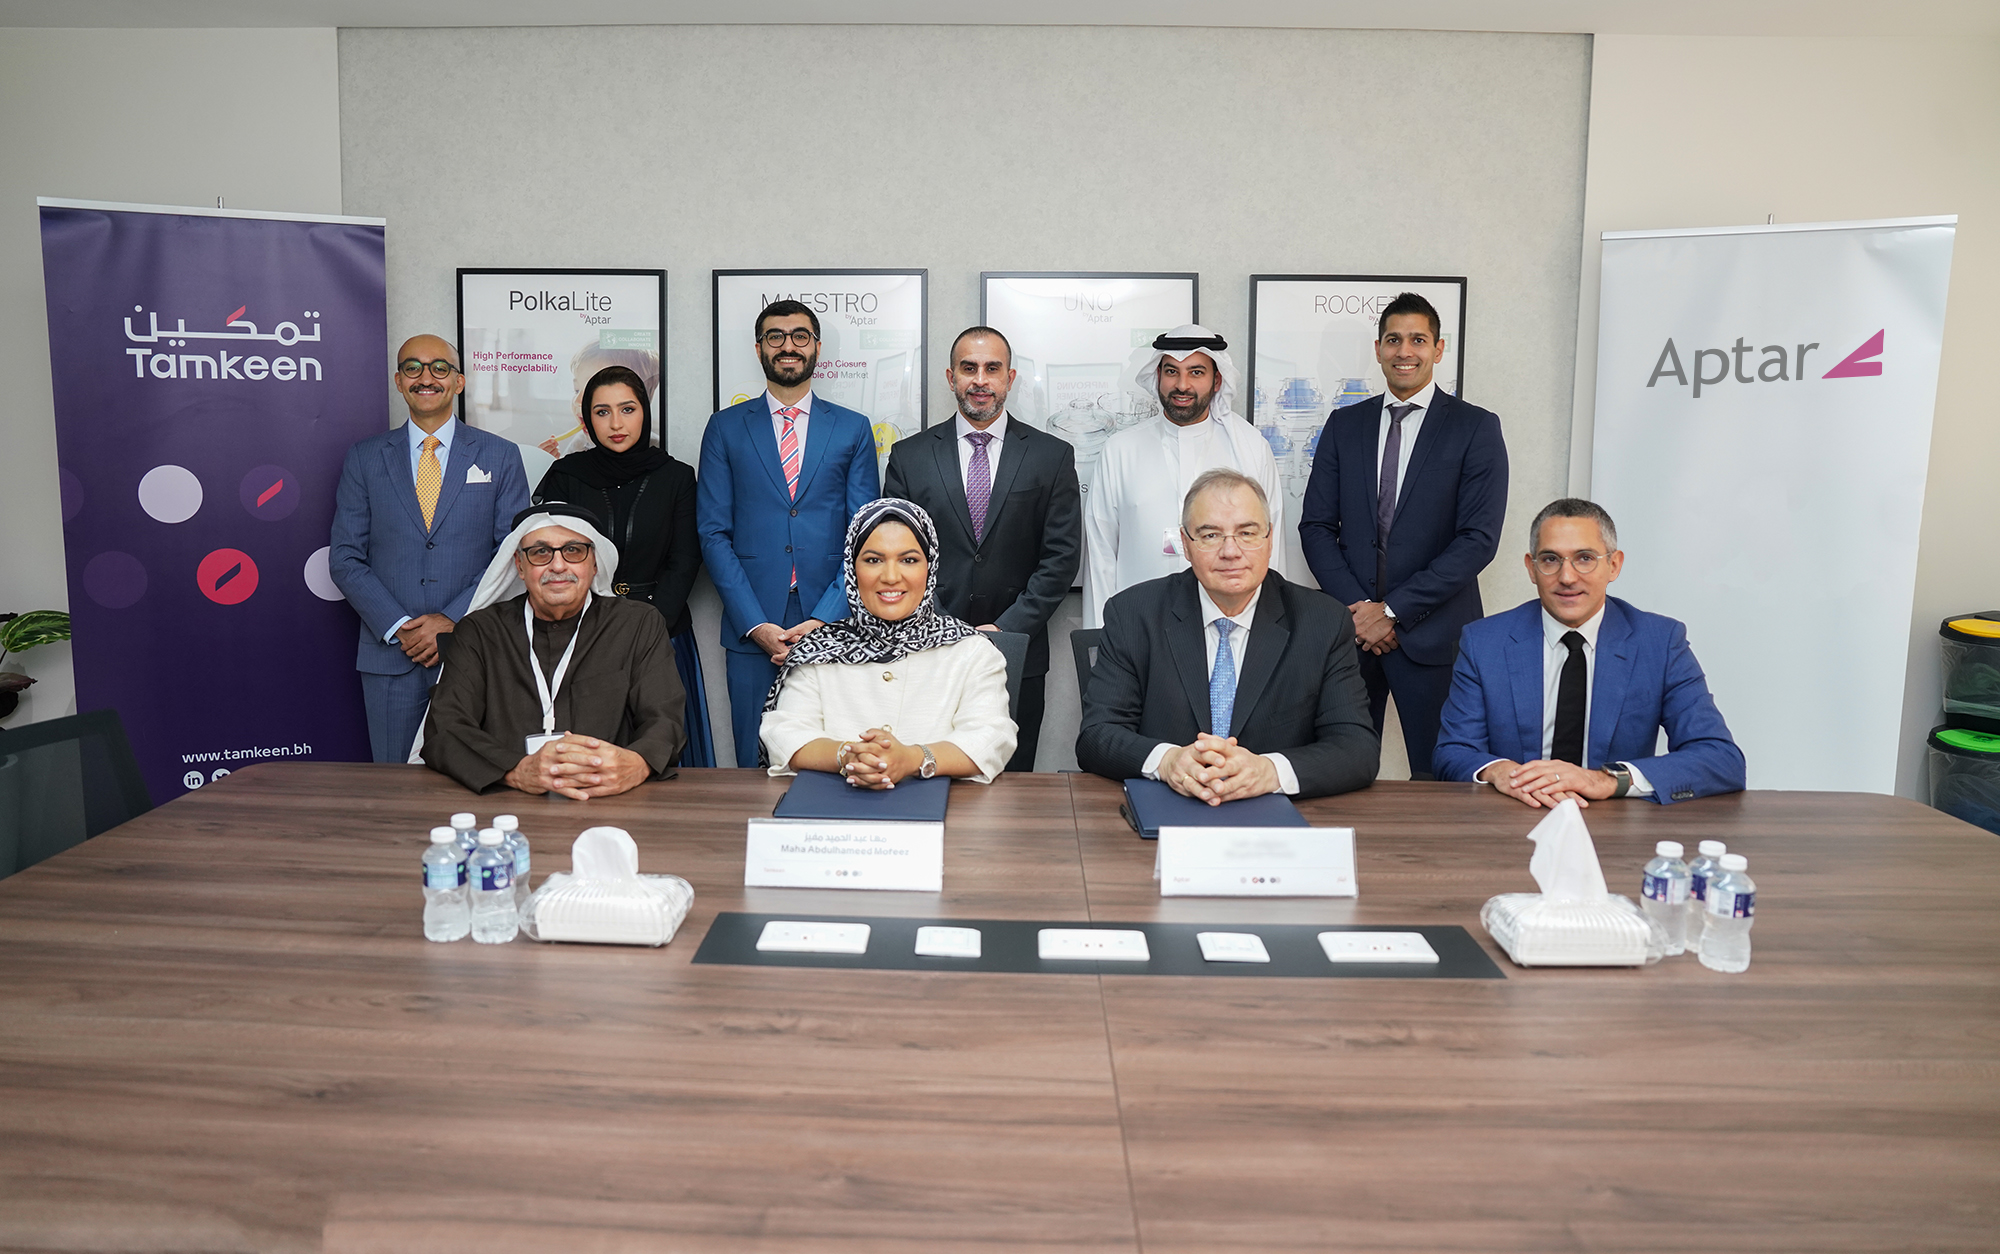 بالشراكة مع شركة صناعات الزياني وشركة أبتار العالمية تمكين تدعم مشروع توسعة شركة أغطية الخليج وخلق فرص تدريبية ووظيفية للبحرينيين